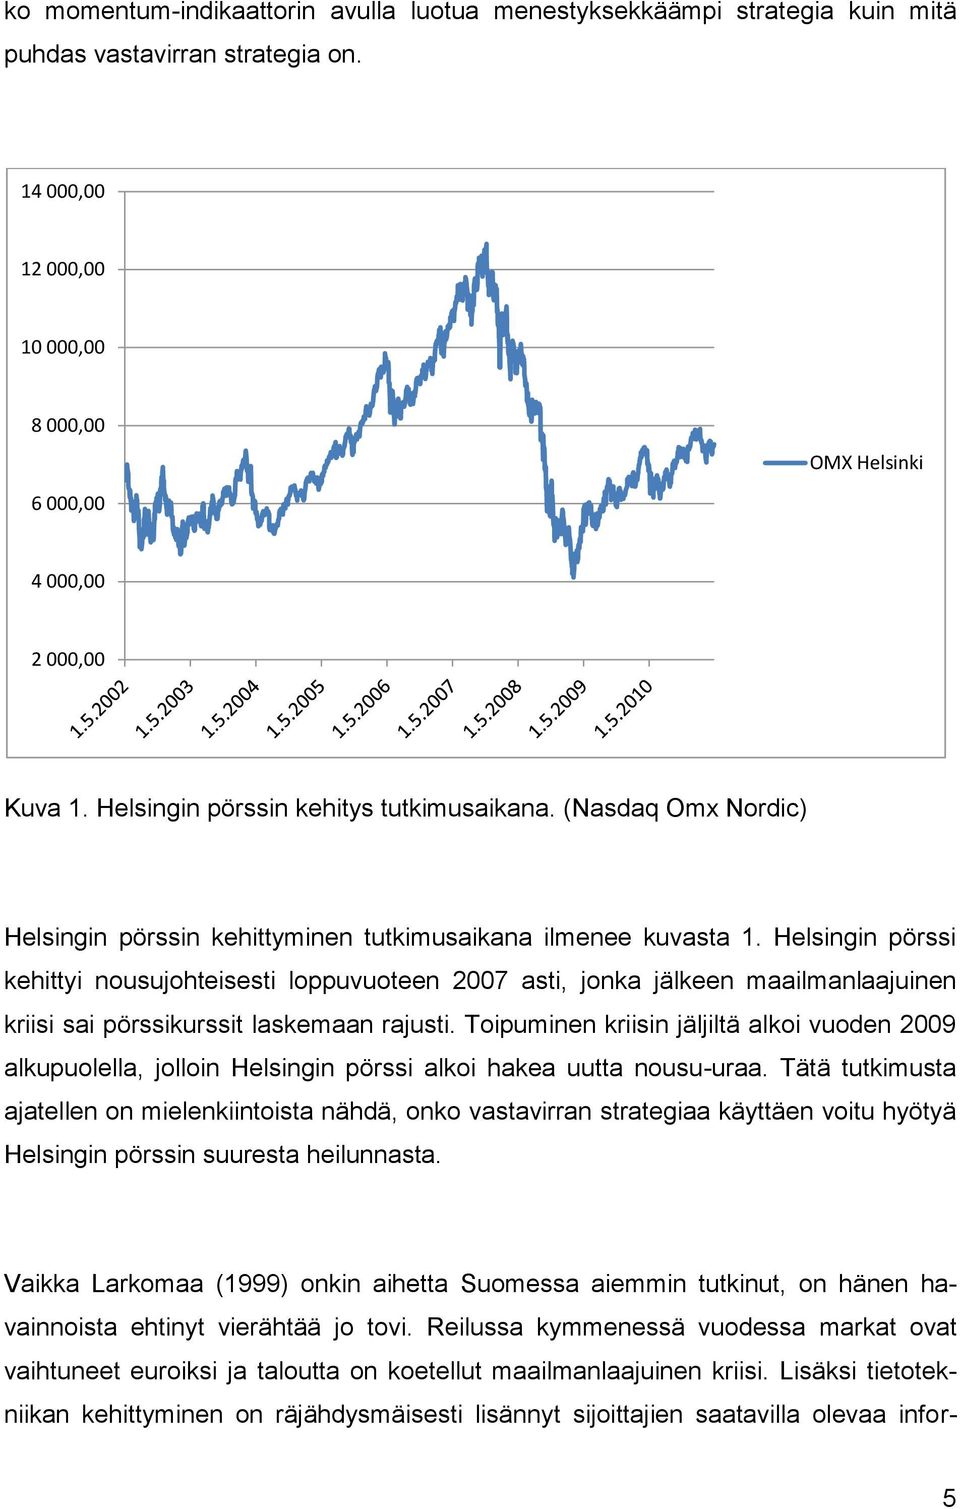 Helsingin pörssi kehittyi nousujohteisesti loppuvuoteen 2007 asti, jonka jälkeen maailmanlaajuinen kriisi sai pörssikurssit laskemaan rajusti.